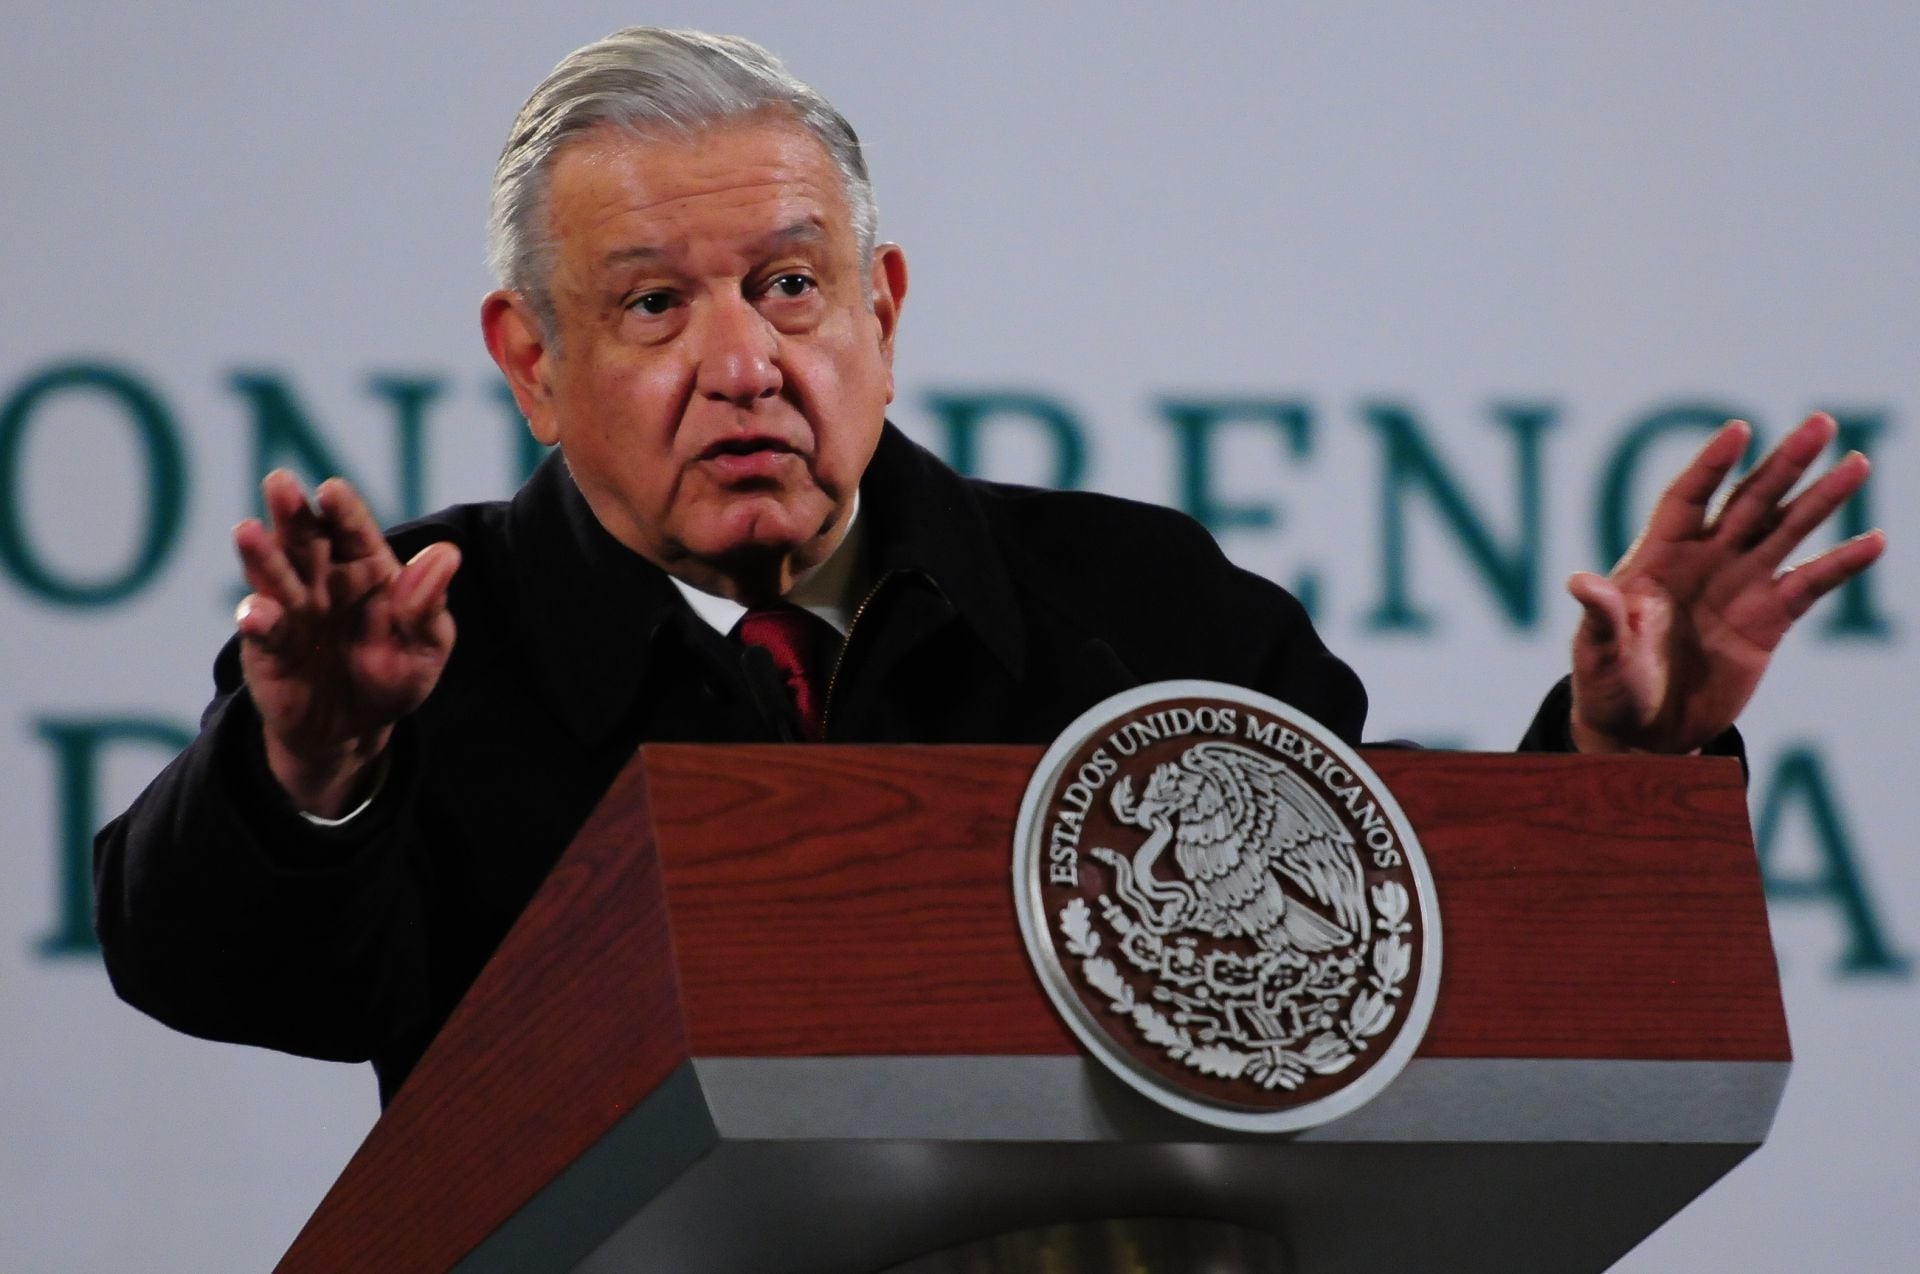 El presidente de México Andrés Manuel López Obrador se dirige a su audiencia.

Foto:
Cuartoscuro